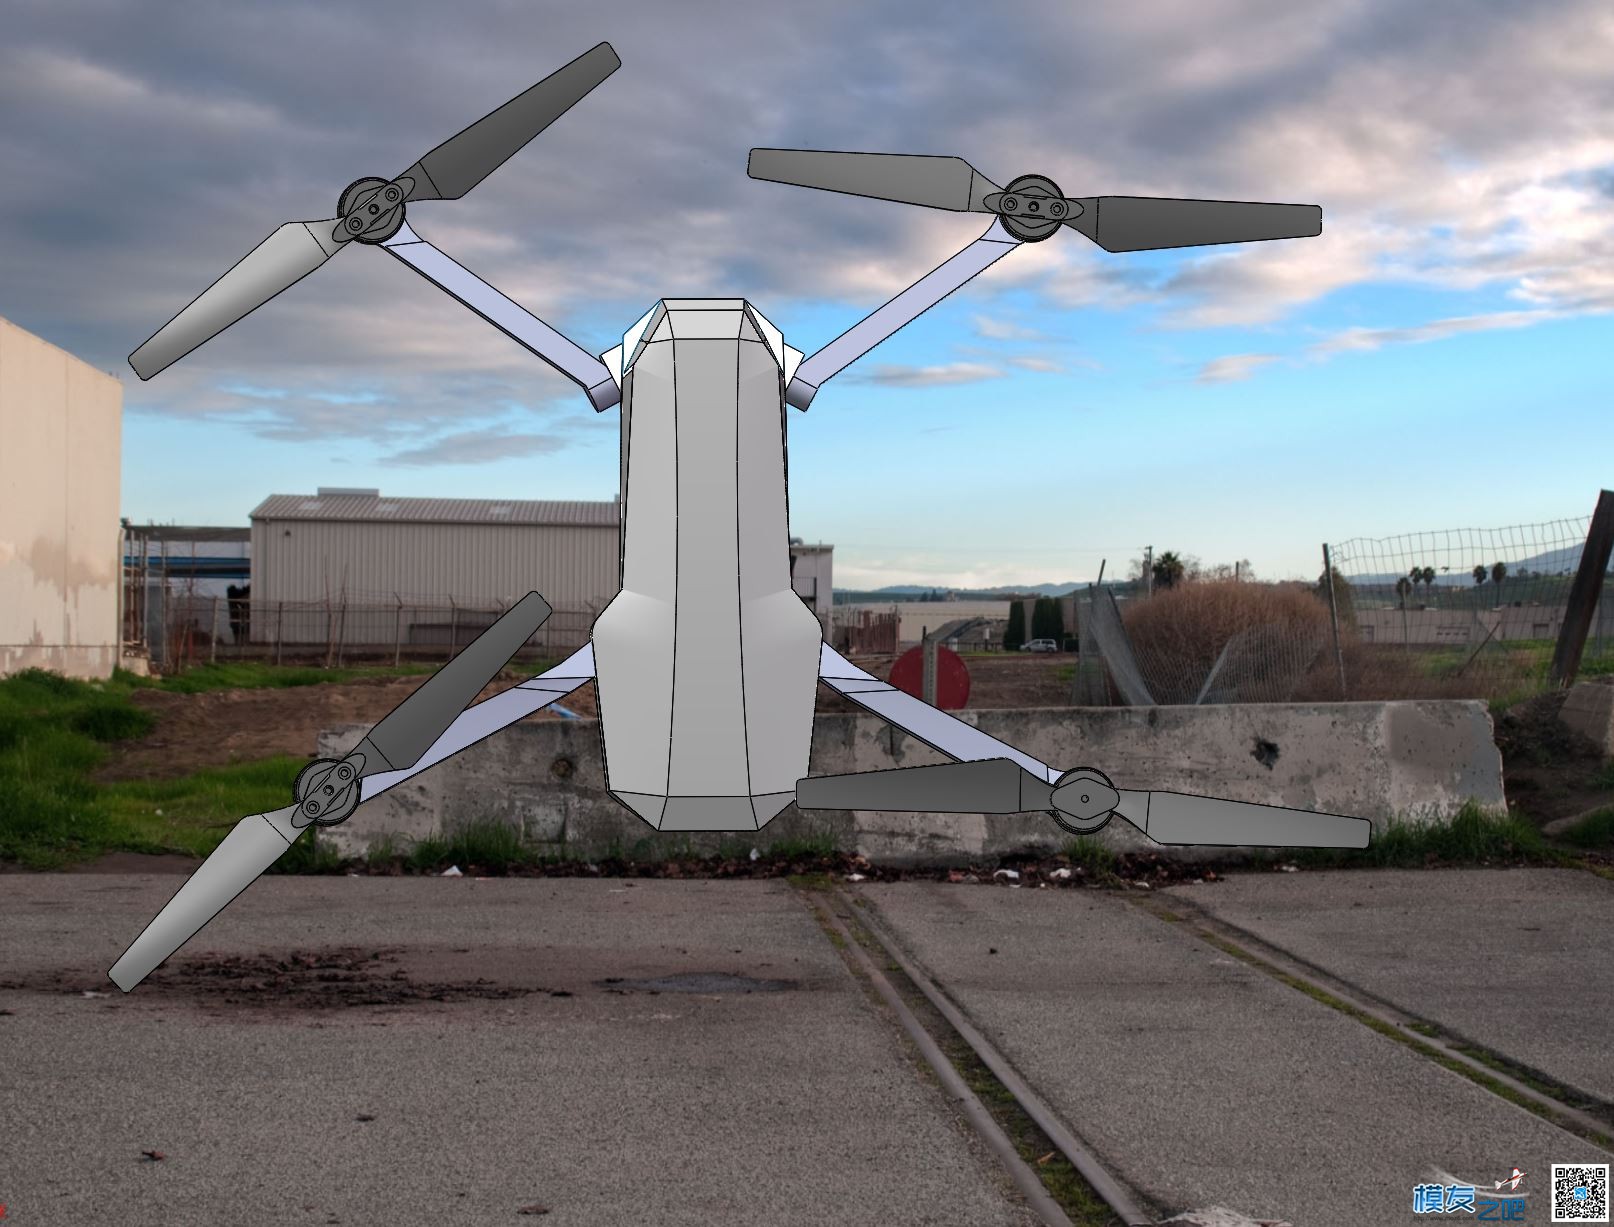 自制大疆mavic折叠无人机 全新设计 慢更 无人机,穿越机,电池,云台,图传 作者:zoney 3598 